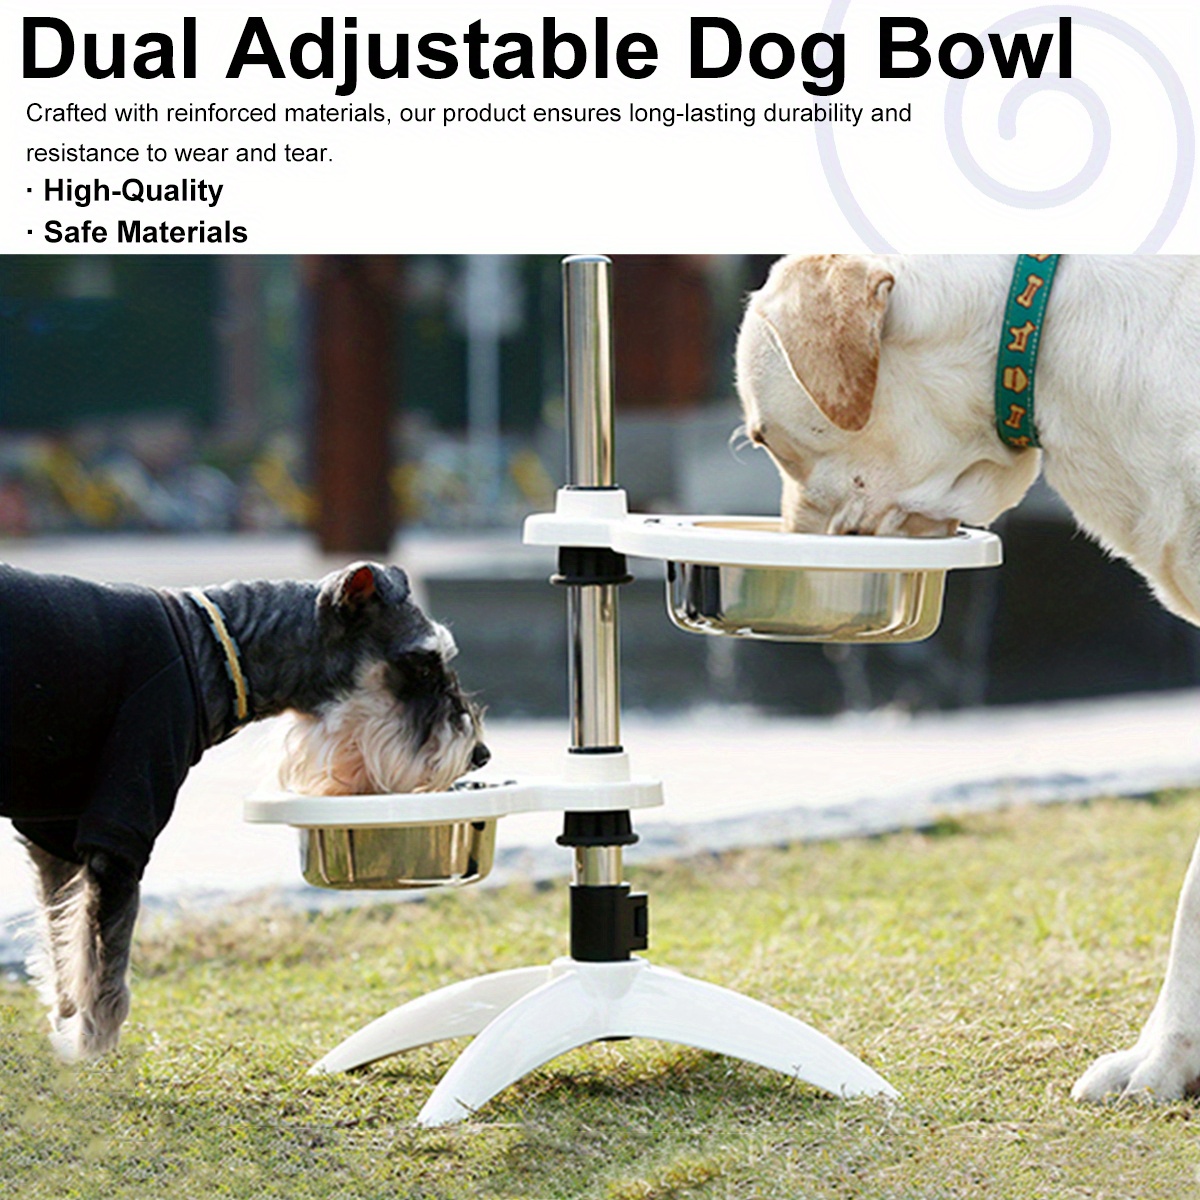 Elevated Dog Bowls Adjustable Raised Dog Bowl Stand Dog Feeding